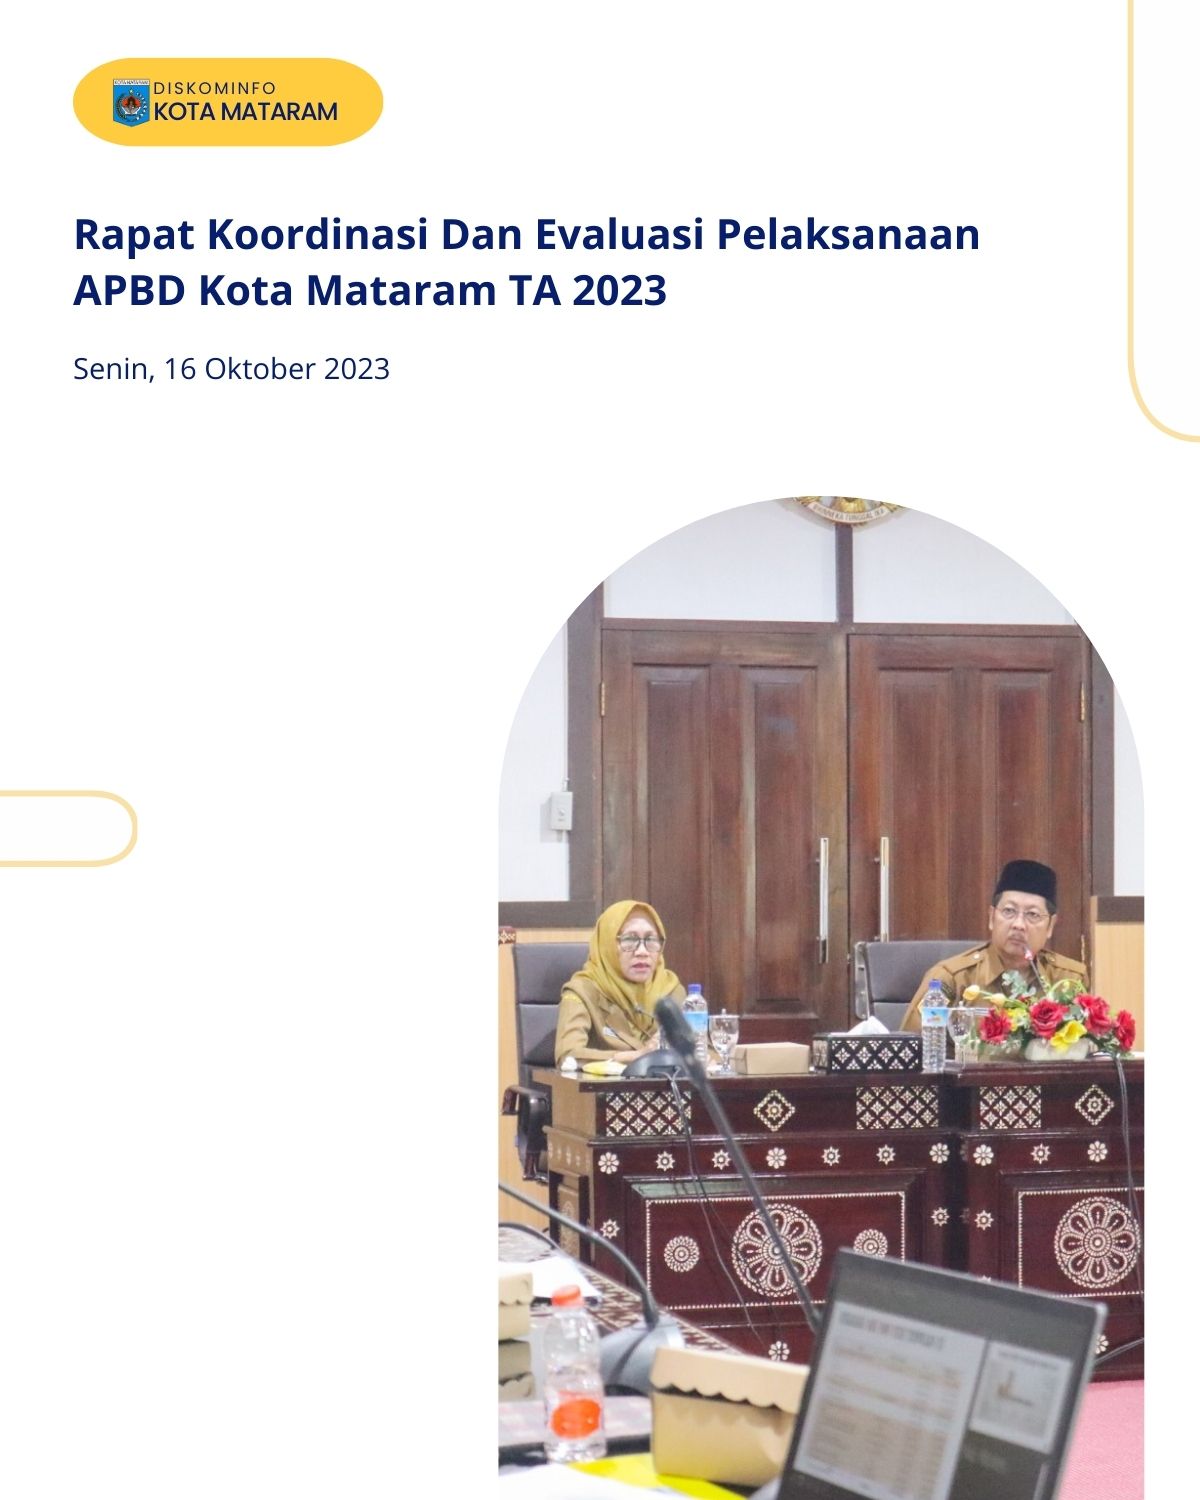 Rapat Koordinasi dan Evaluasi pelaksanaan APBD Kota Mataram TA 2023